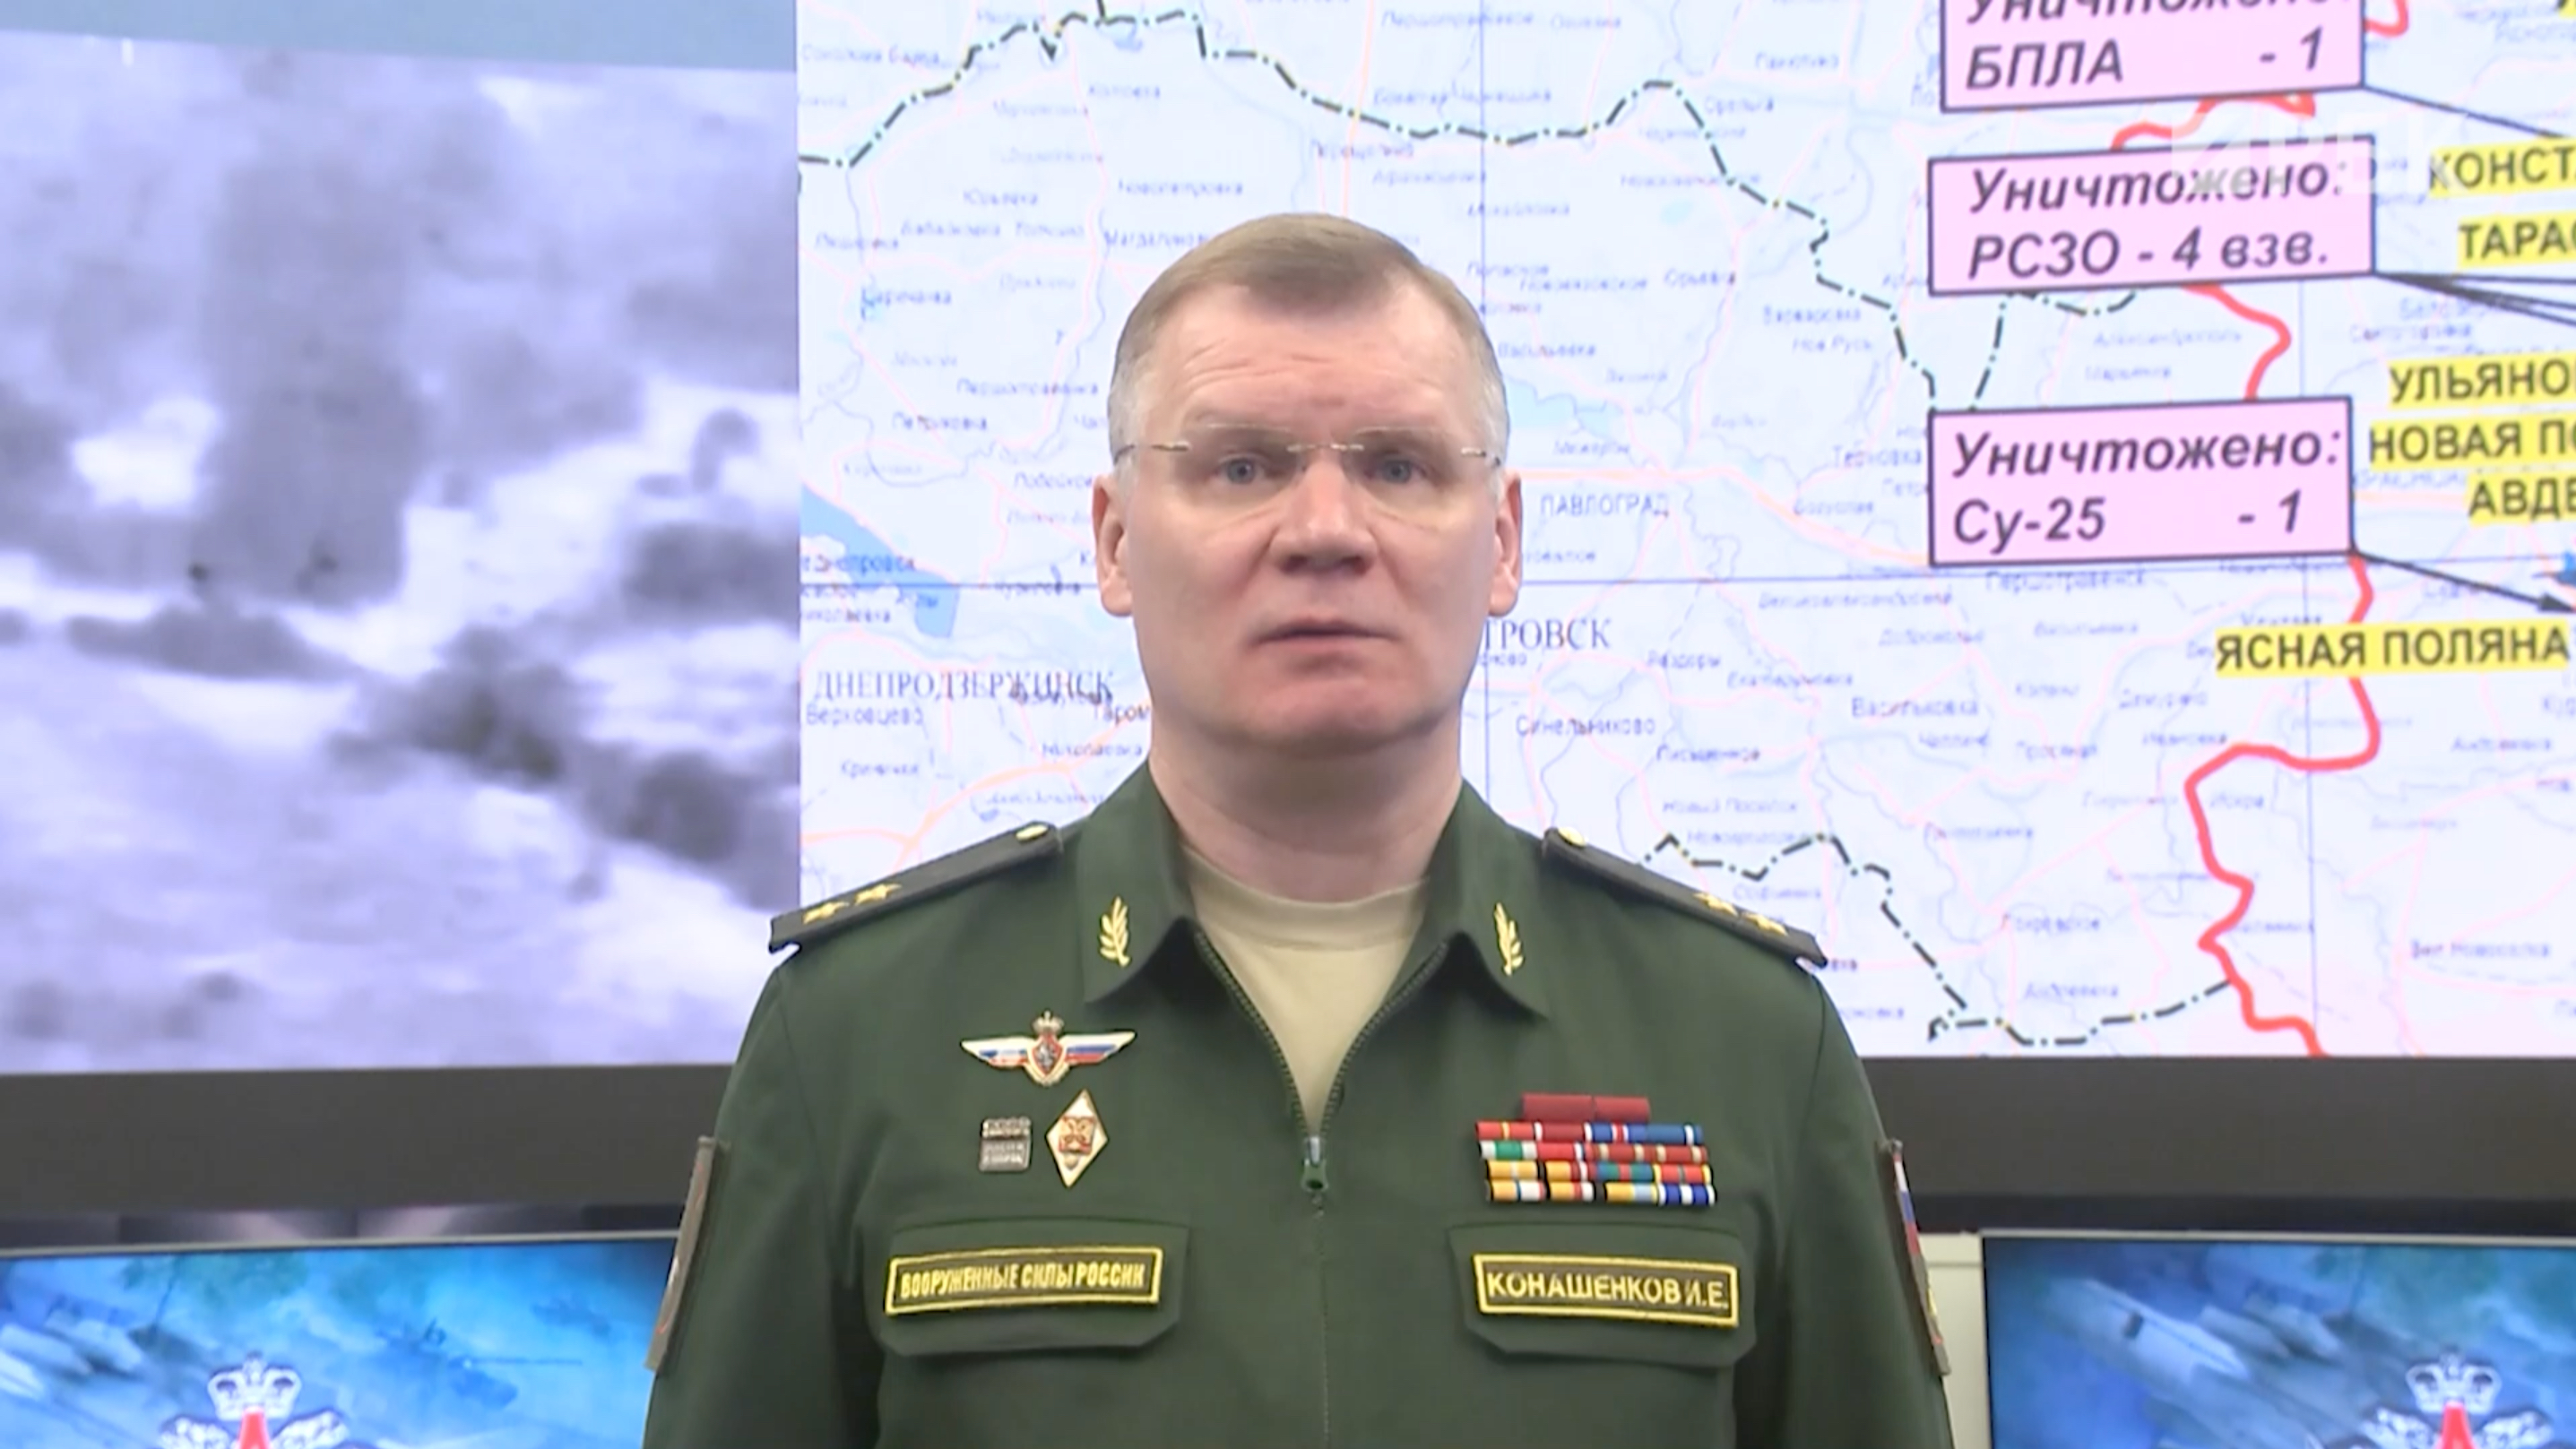 Минобороны сообщило о сбитом украинском Су-25 над Ясной Поляной в ДНР